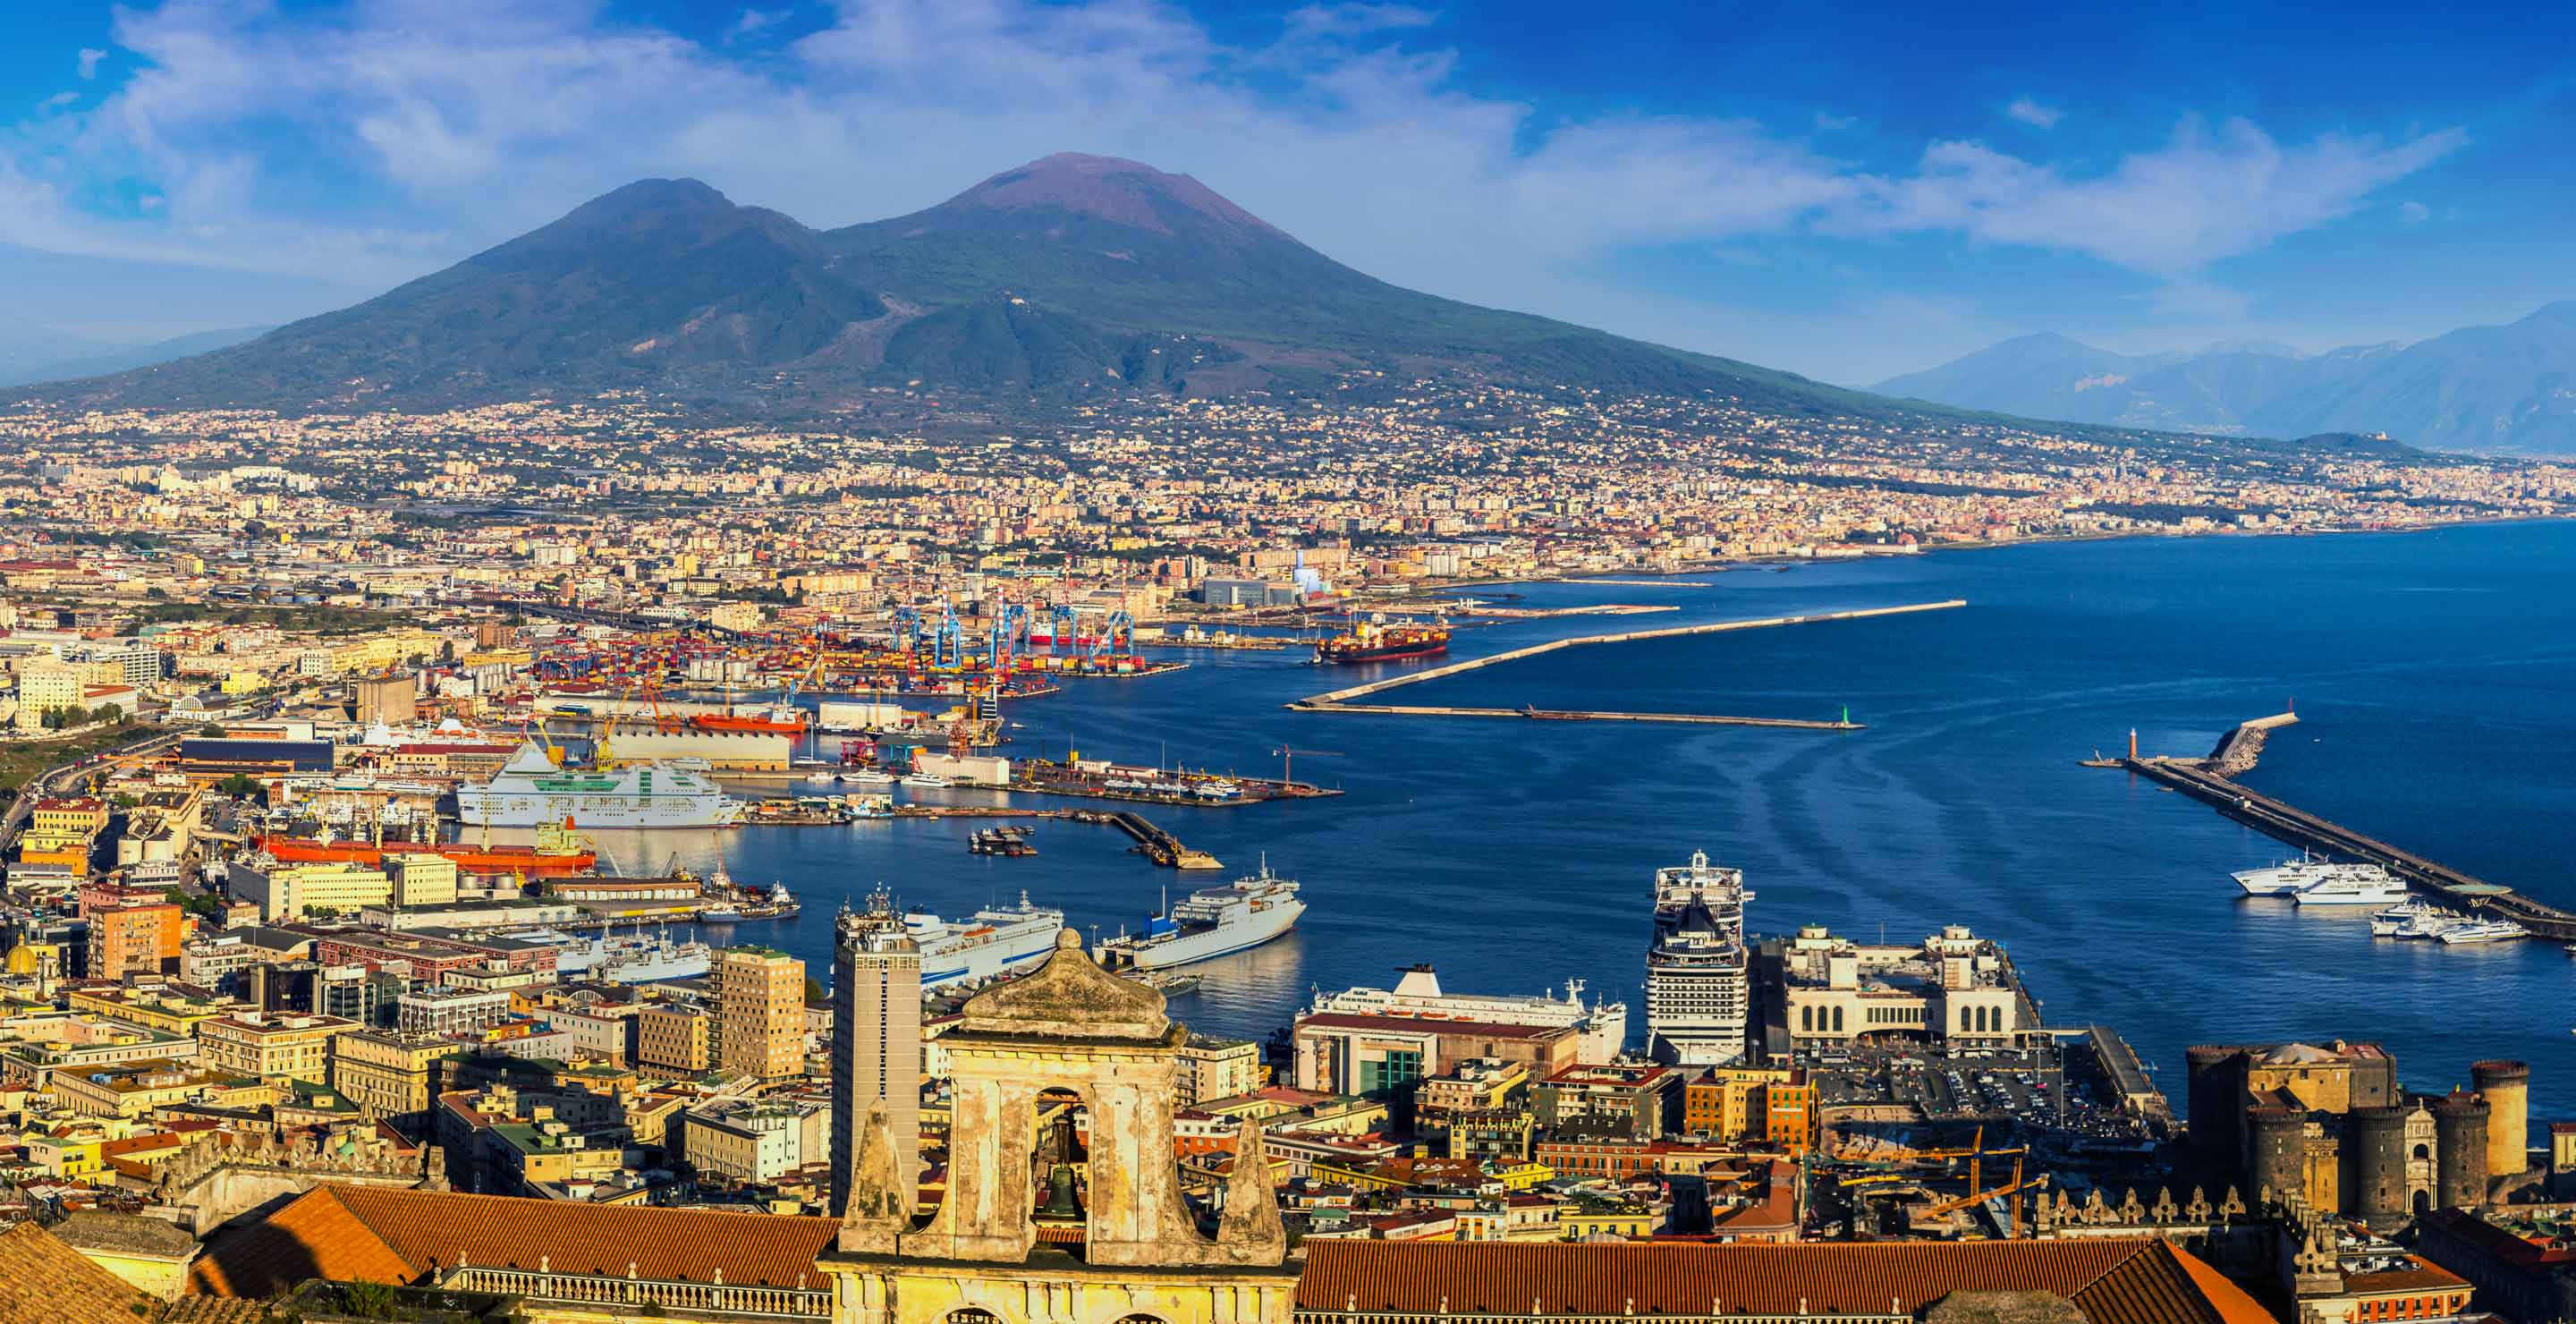 Pullman per Napoli: orari e offerte biglietti pullman | Trainline